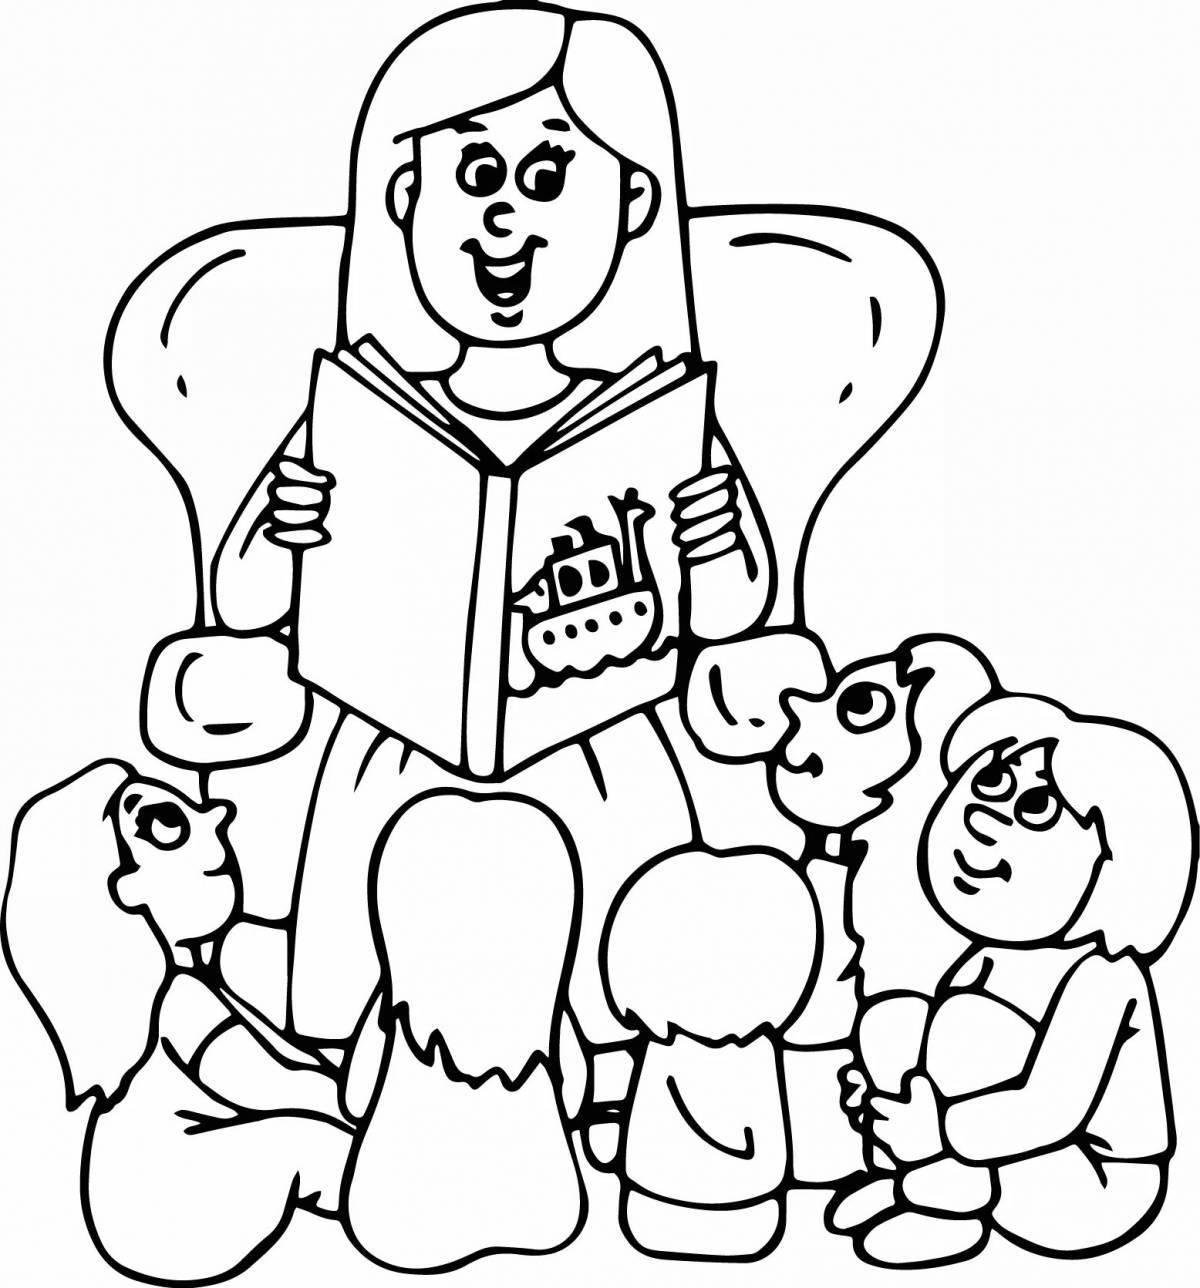 Children reading books #1